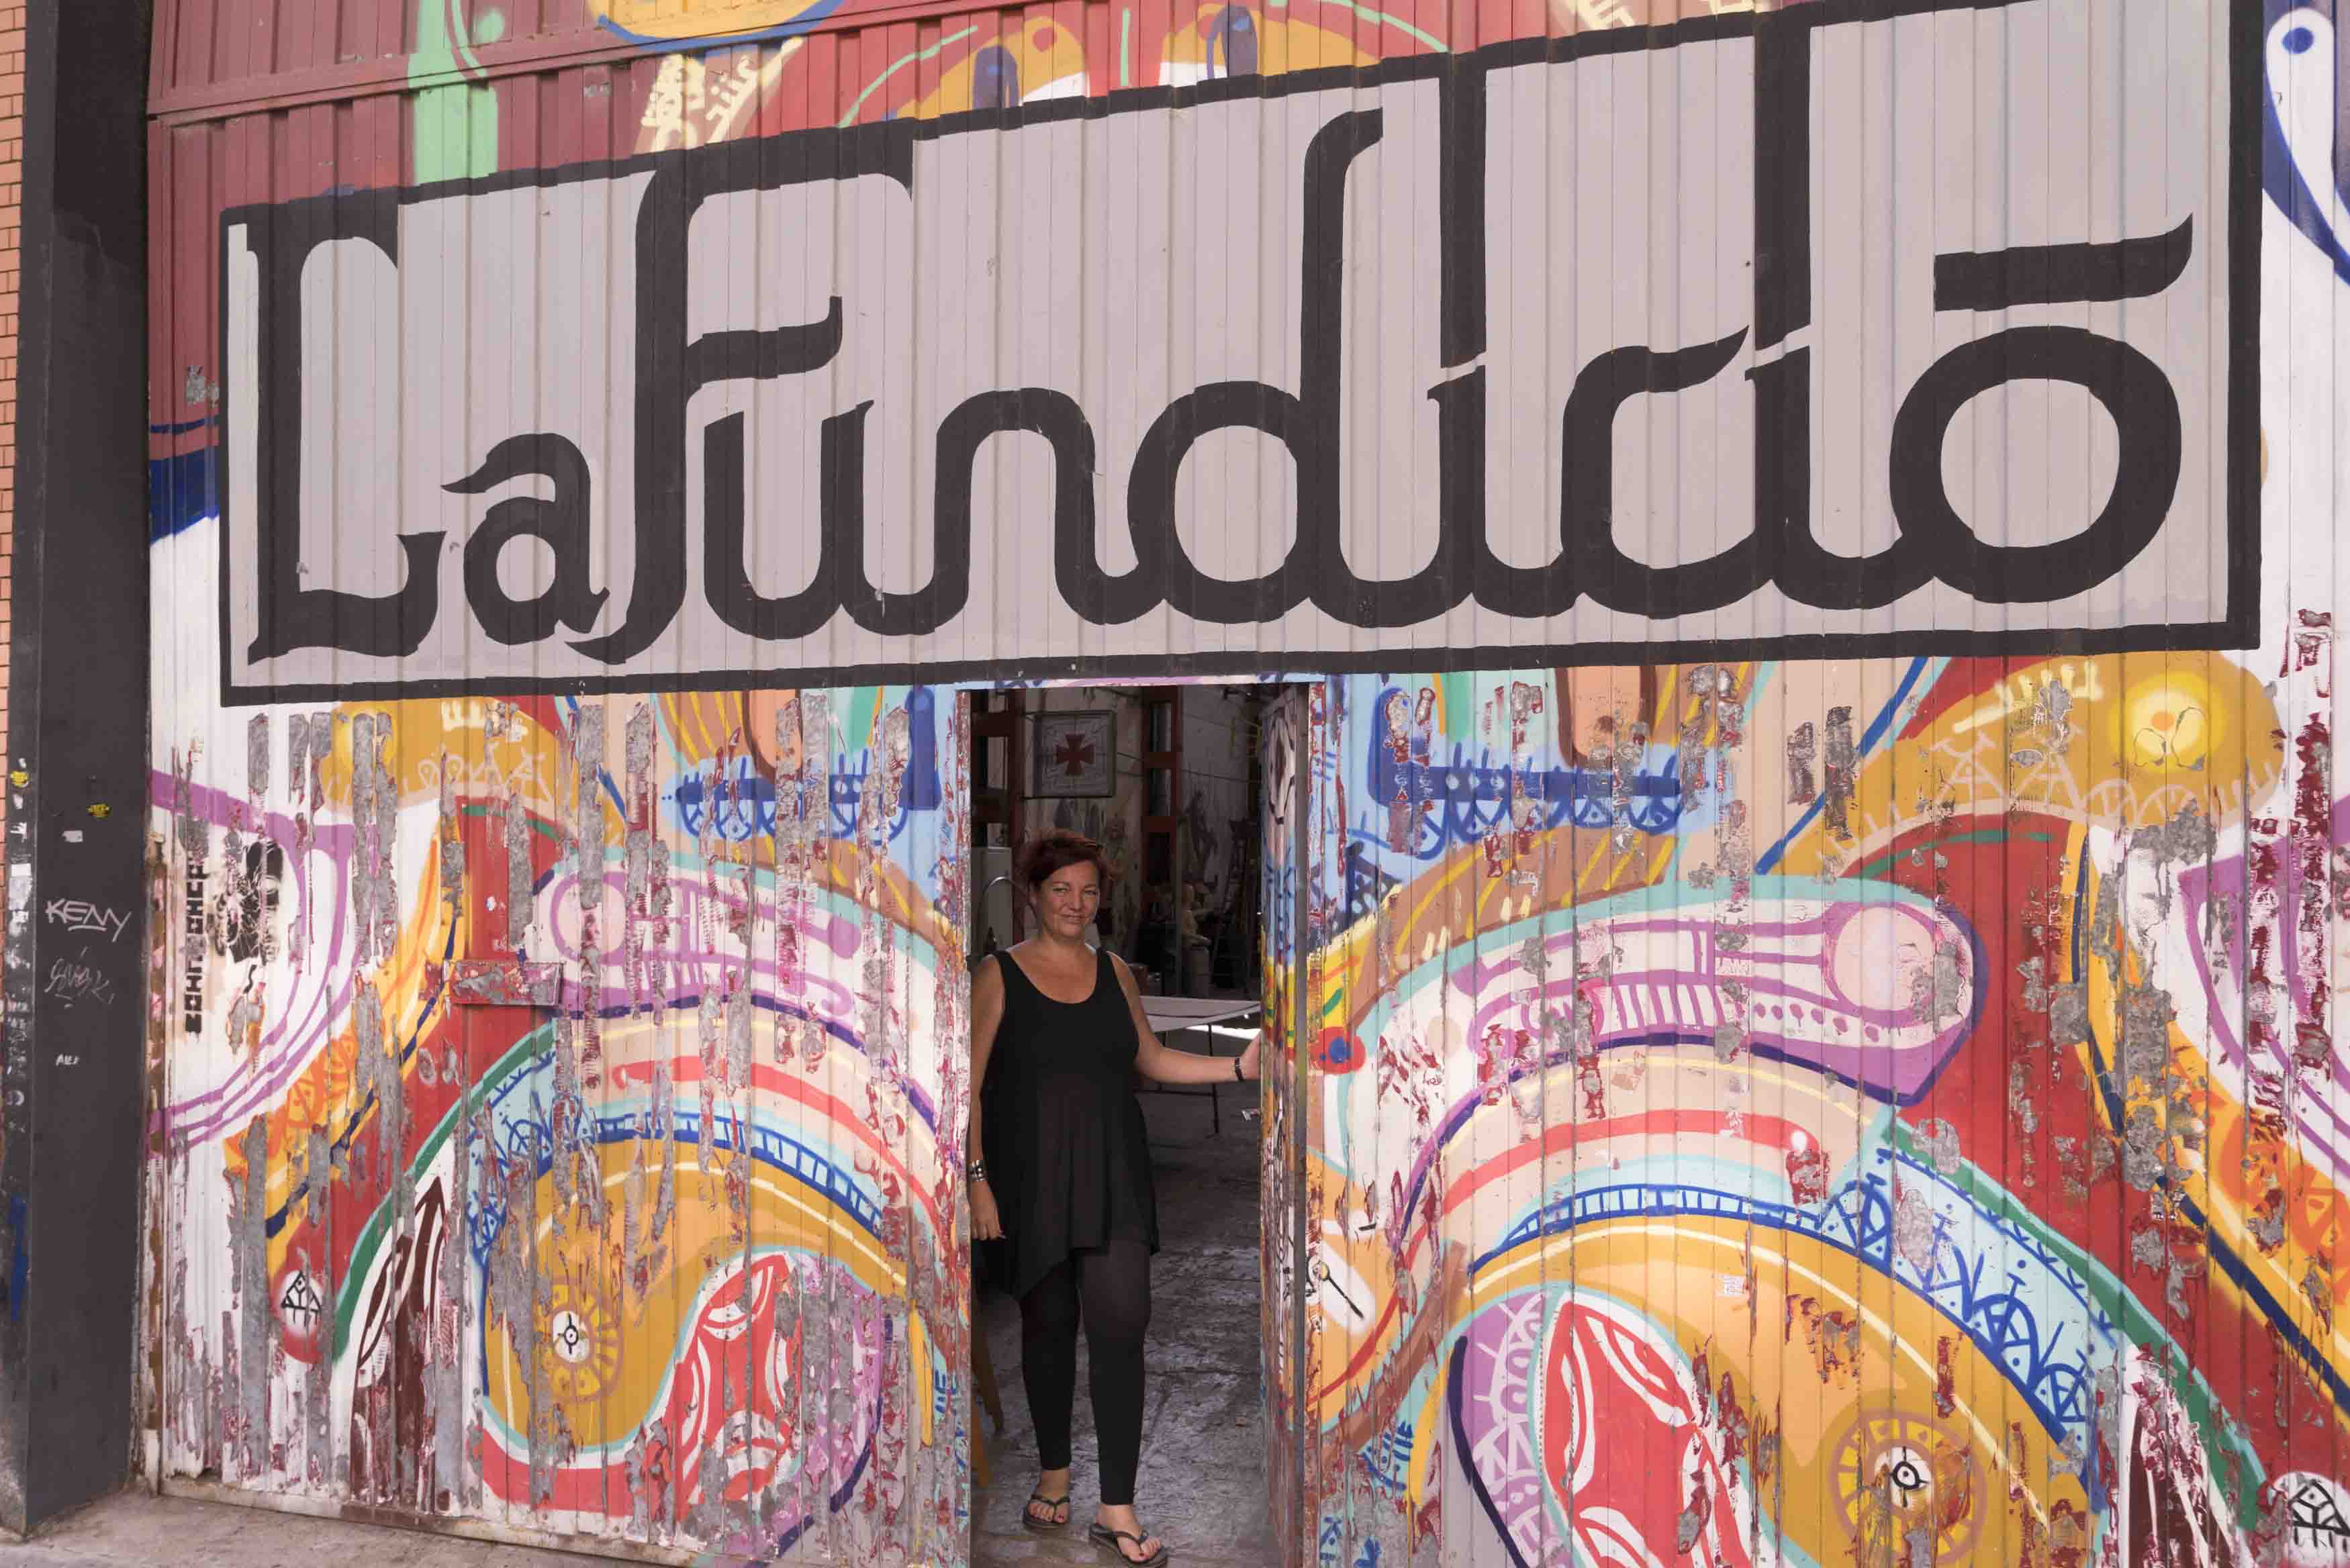 Kunstateliers La Fundicio in einer ehemaligen Gießerei in Barcelona Poble Nou, Foto: Robert B. Fishman, 4.10.2014